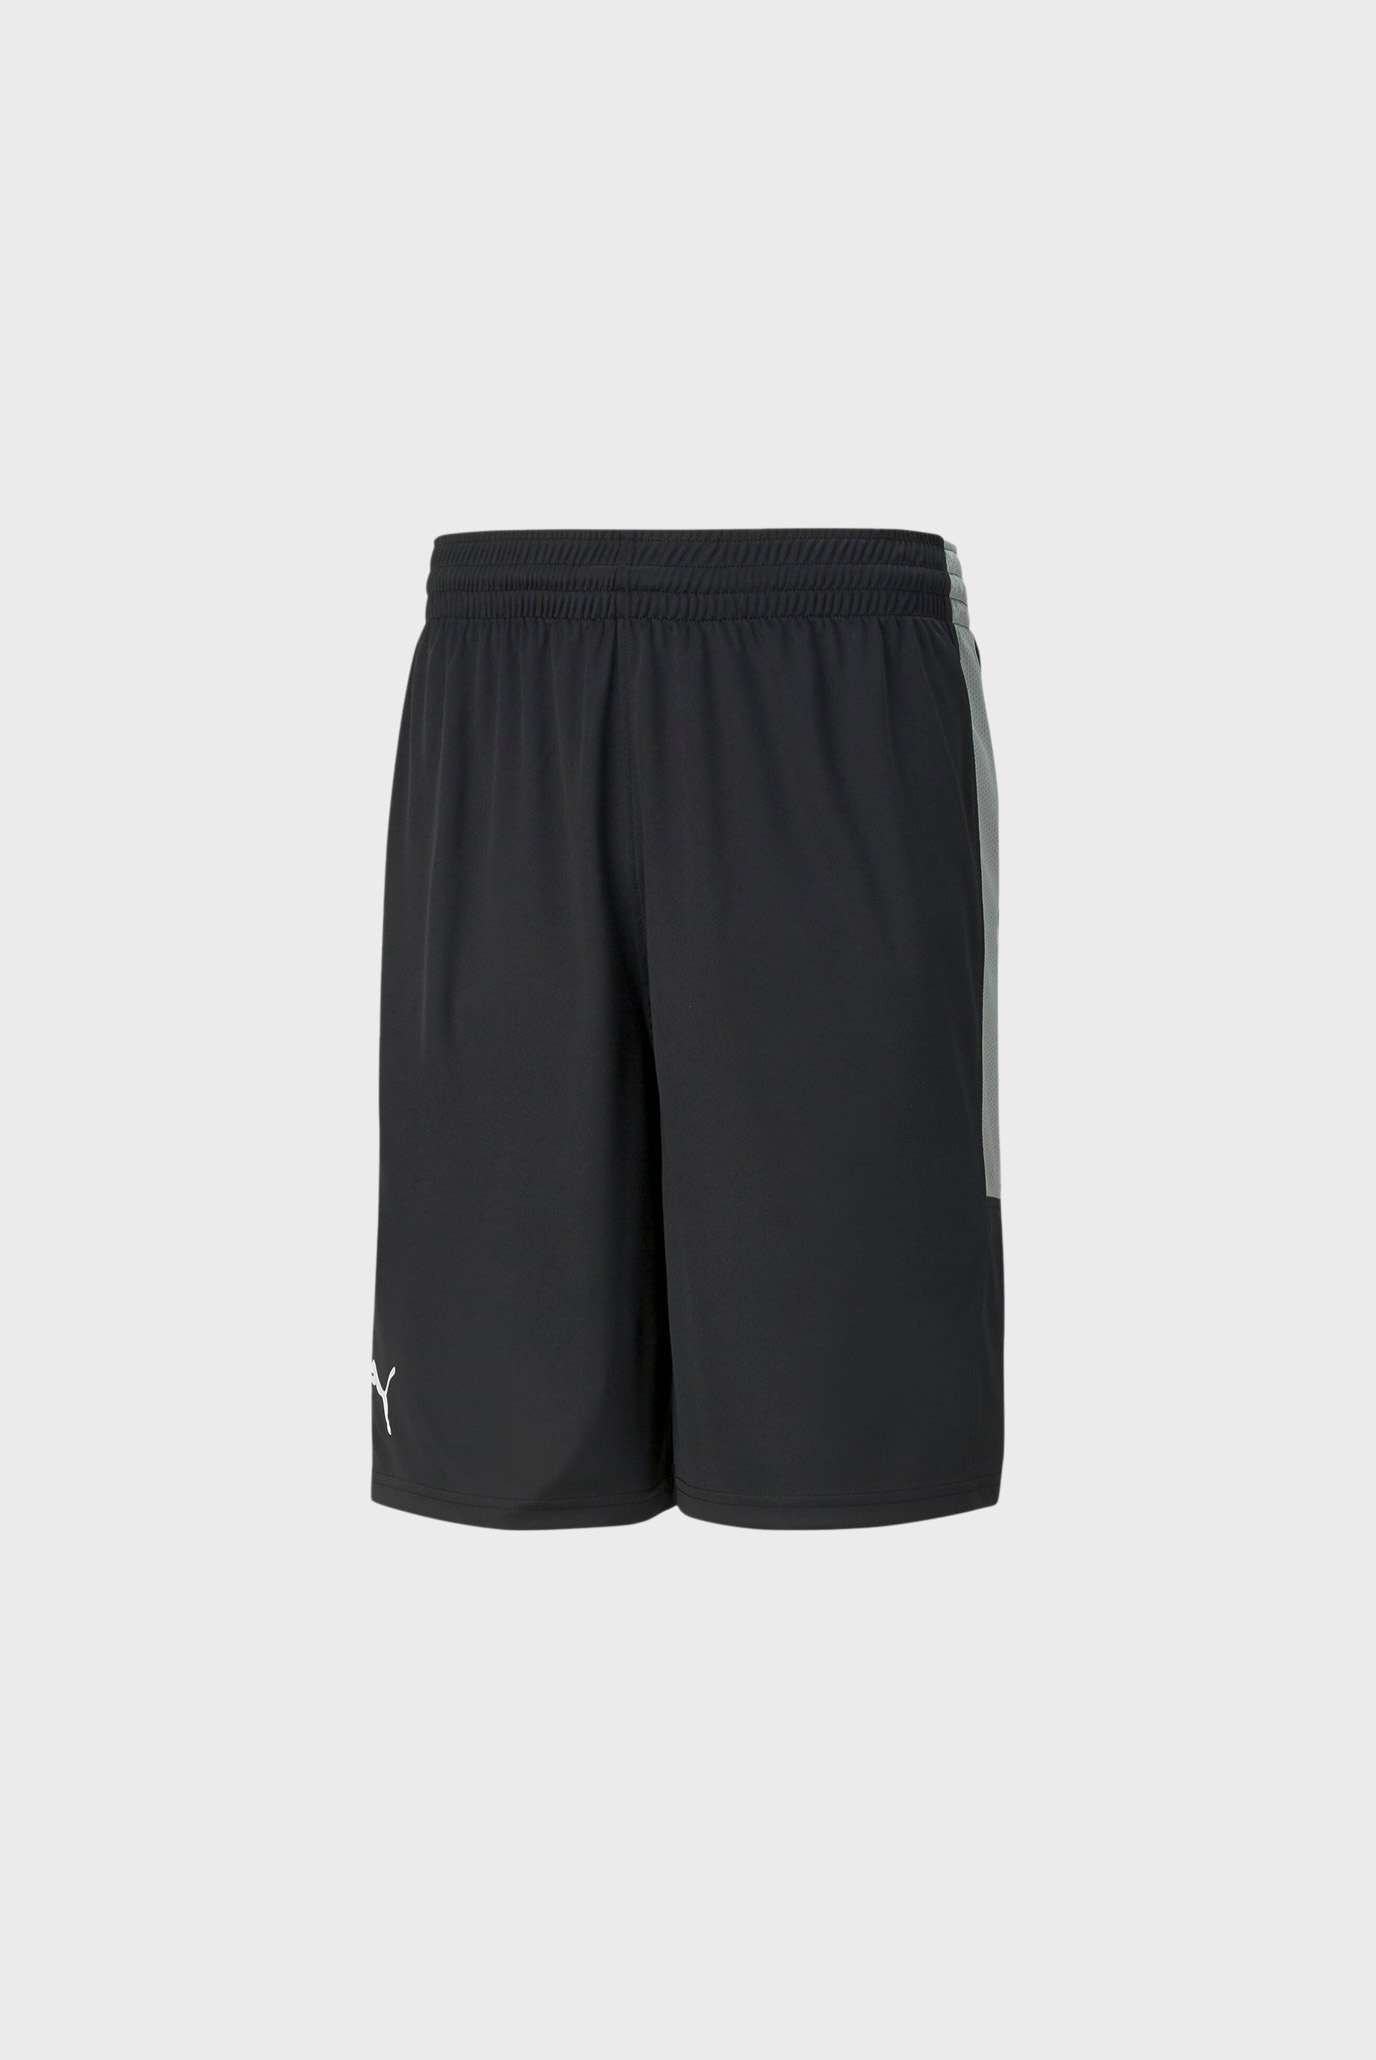 Чоловічі чорні шорти Men’s Basketball Game Shorts 1